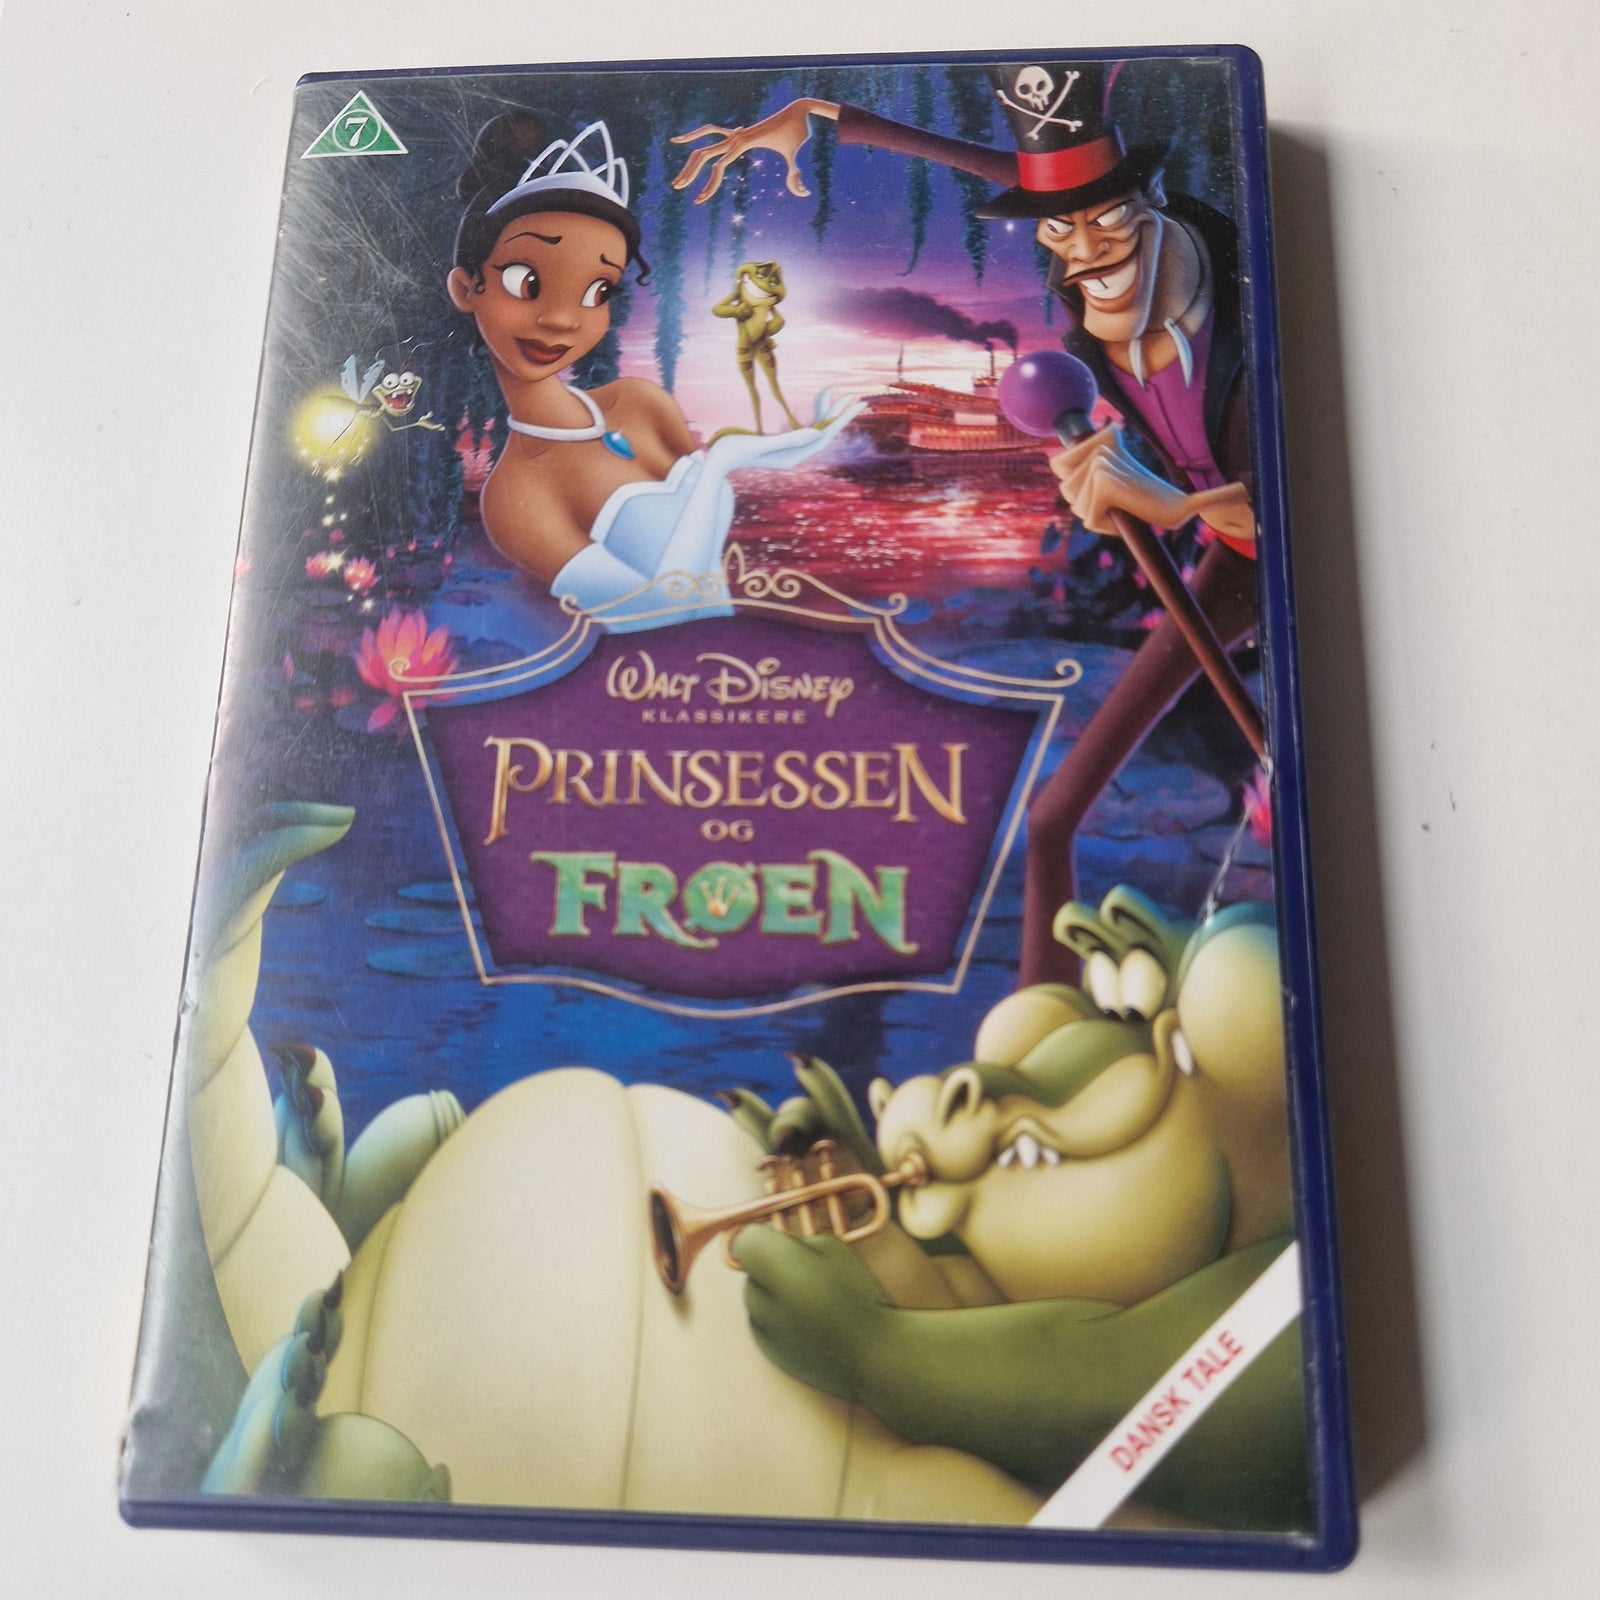 Prinsessen og Frøen, instruktør Walt Disney, DVD